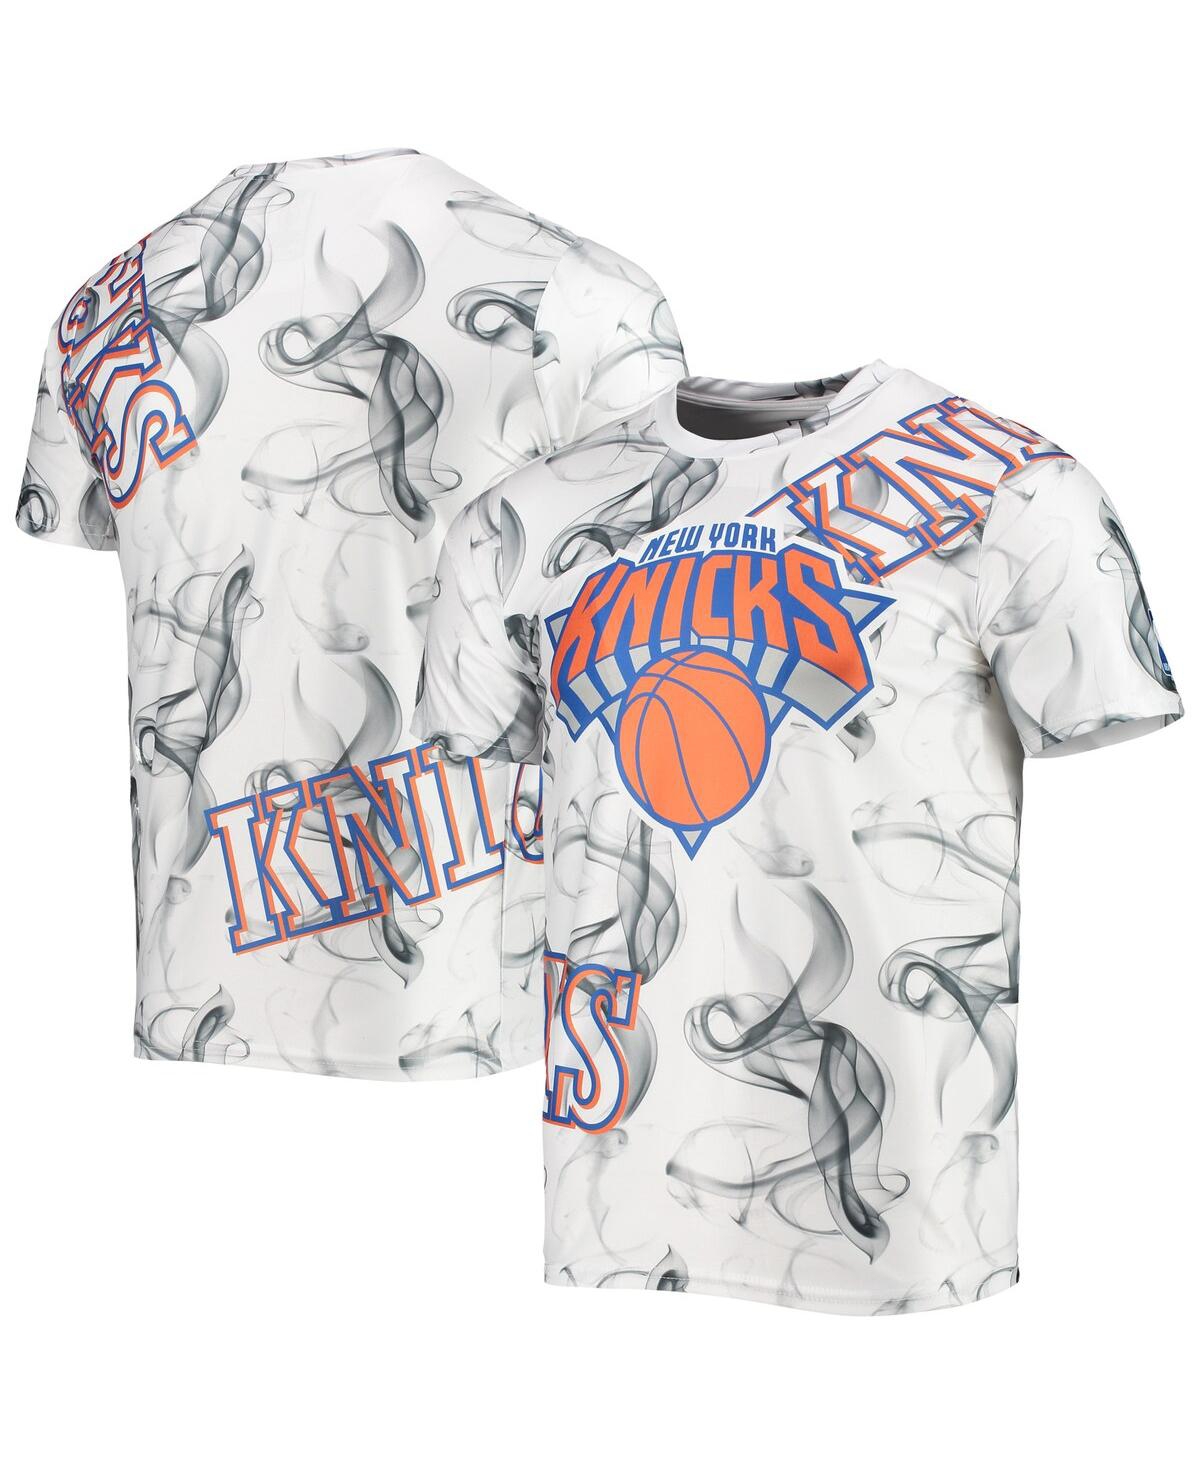 Men's White, Black New York Knicks Asymmetric Bold Smoke T-shirt - White, Black